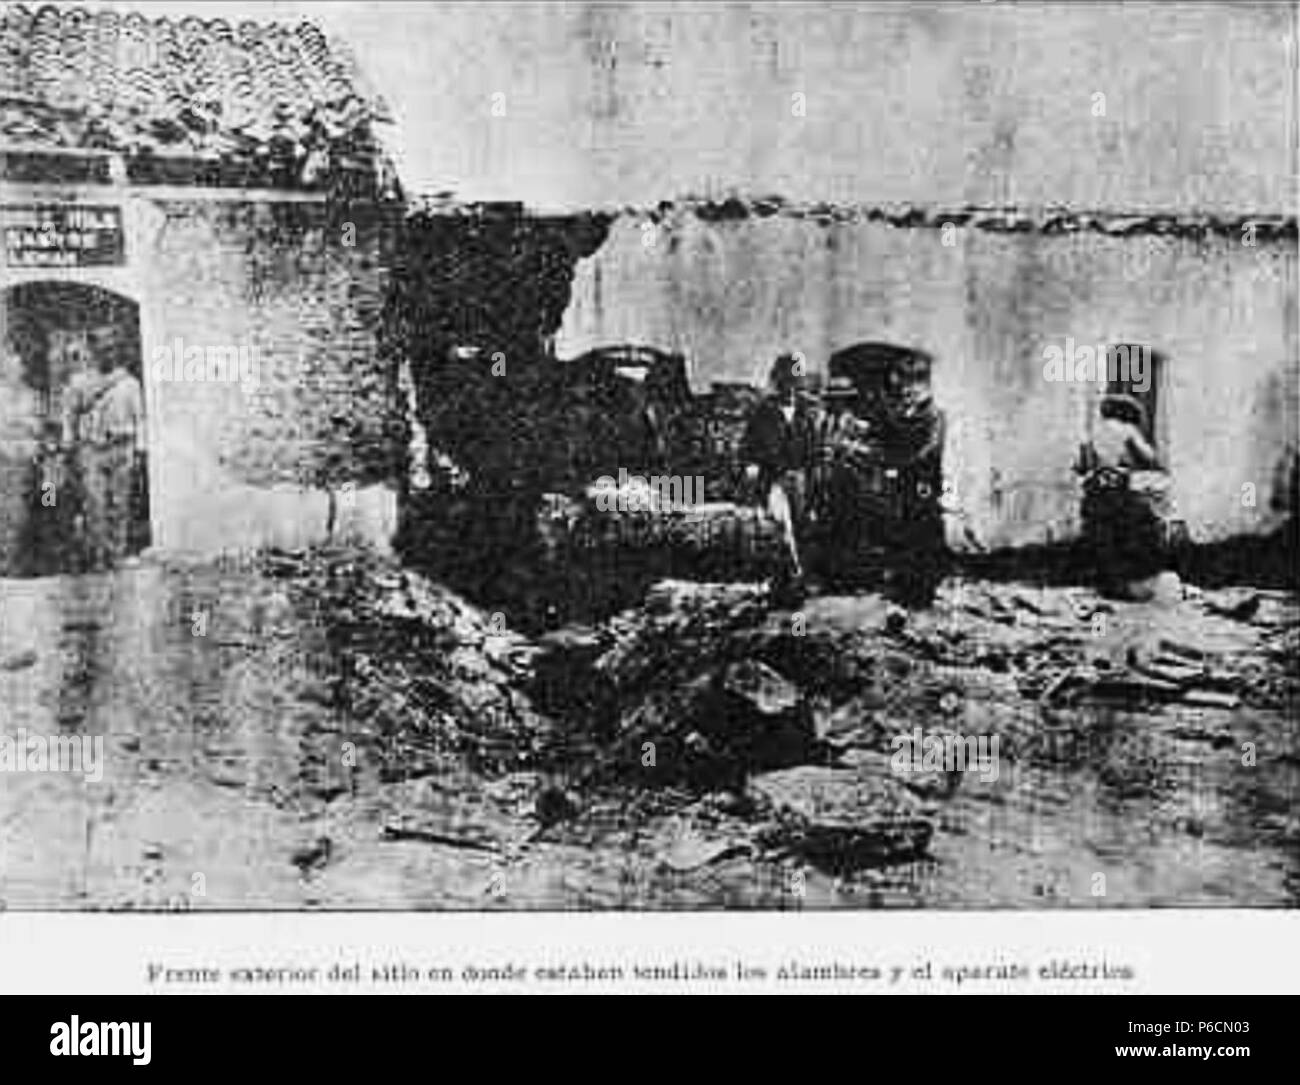 Español: Frente exterior del sitio en donde se encontraban los cables del detonador. Atentado de La Bomba contra Manuel Estrada Cabrera el 29 de abril de 1907. 10 May 1907 6 AtentadoBomba1907 06 Stock Photo